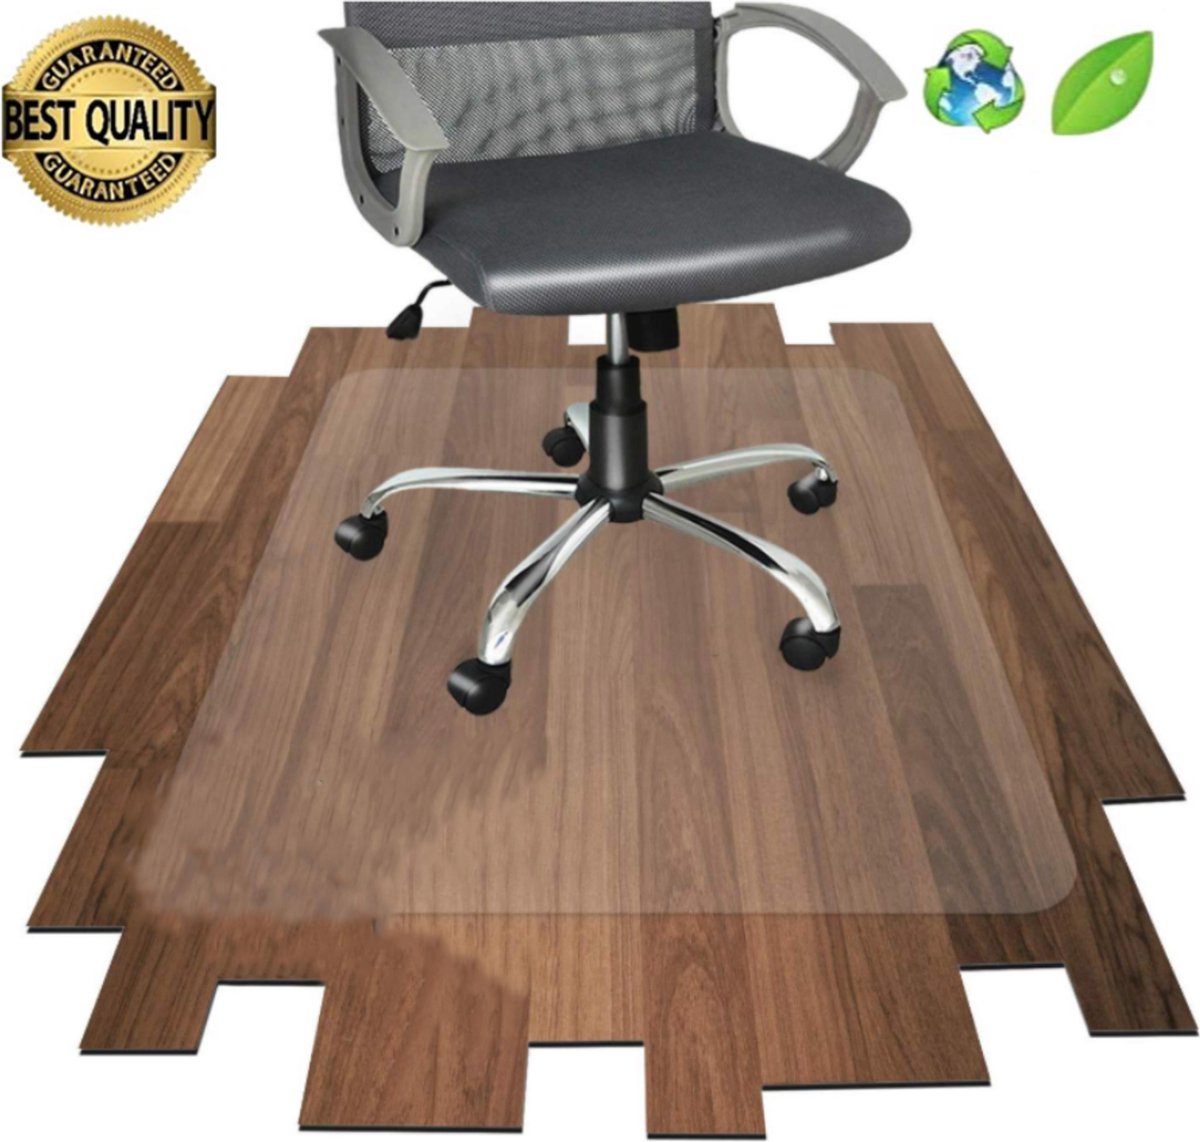 Luxergoods bureaustoelmat PVC - 70x100 cm - Vloermat bureaustoel - Antislipmat - Vloerbeschermer - Beschermt vloerbedekking - LuxerGoods™